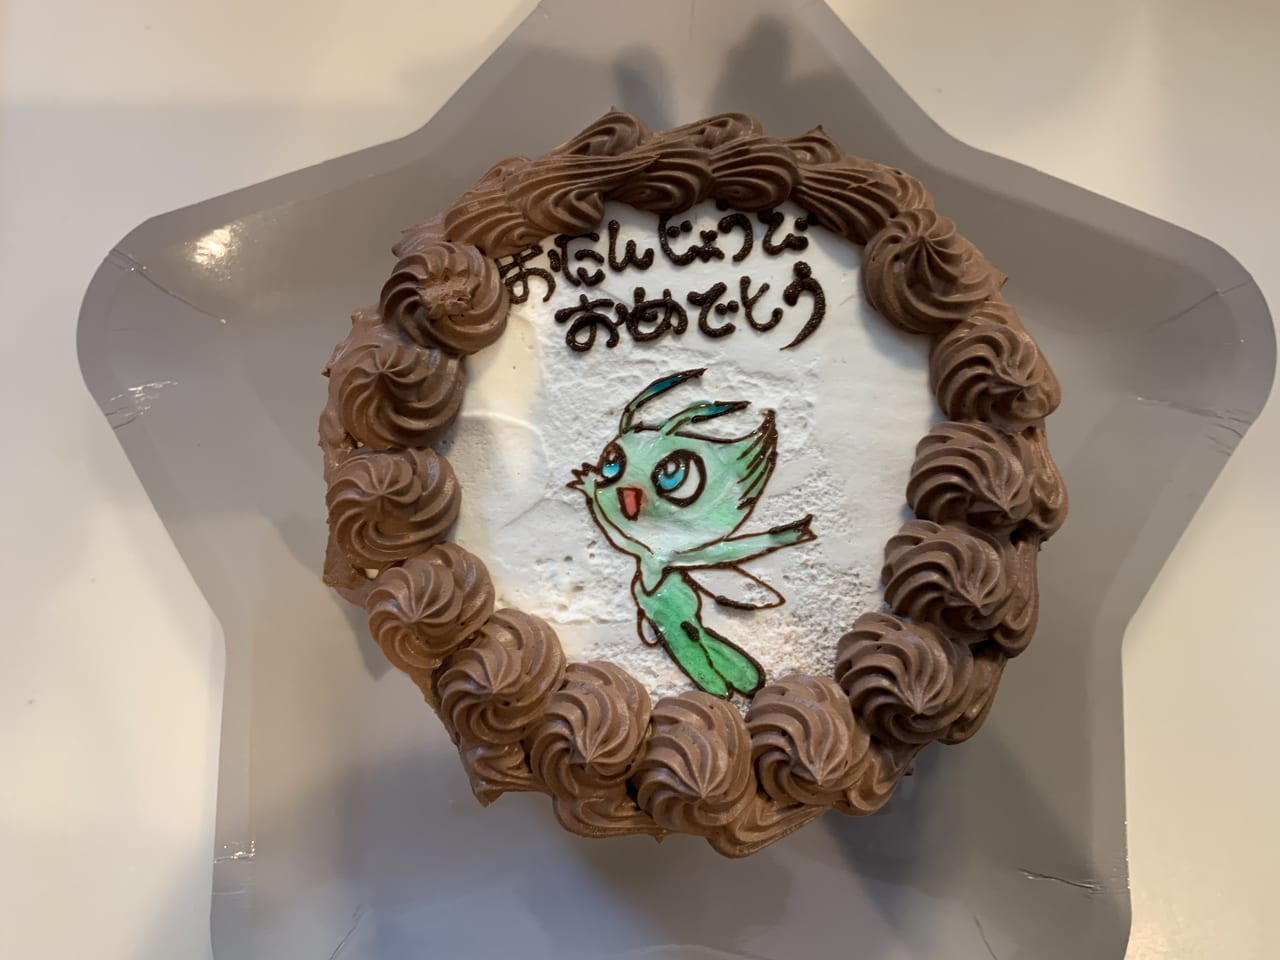 立川市 お誕生日に 子どもが喜ぶキャラクターケーキがオーダー出来るお店があります 号外net 立川市 昭島市